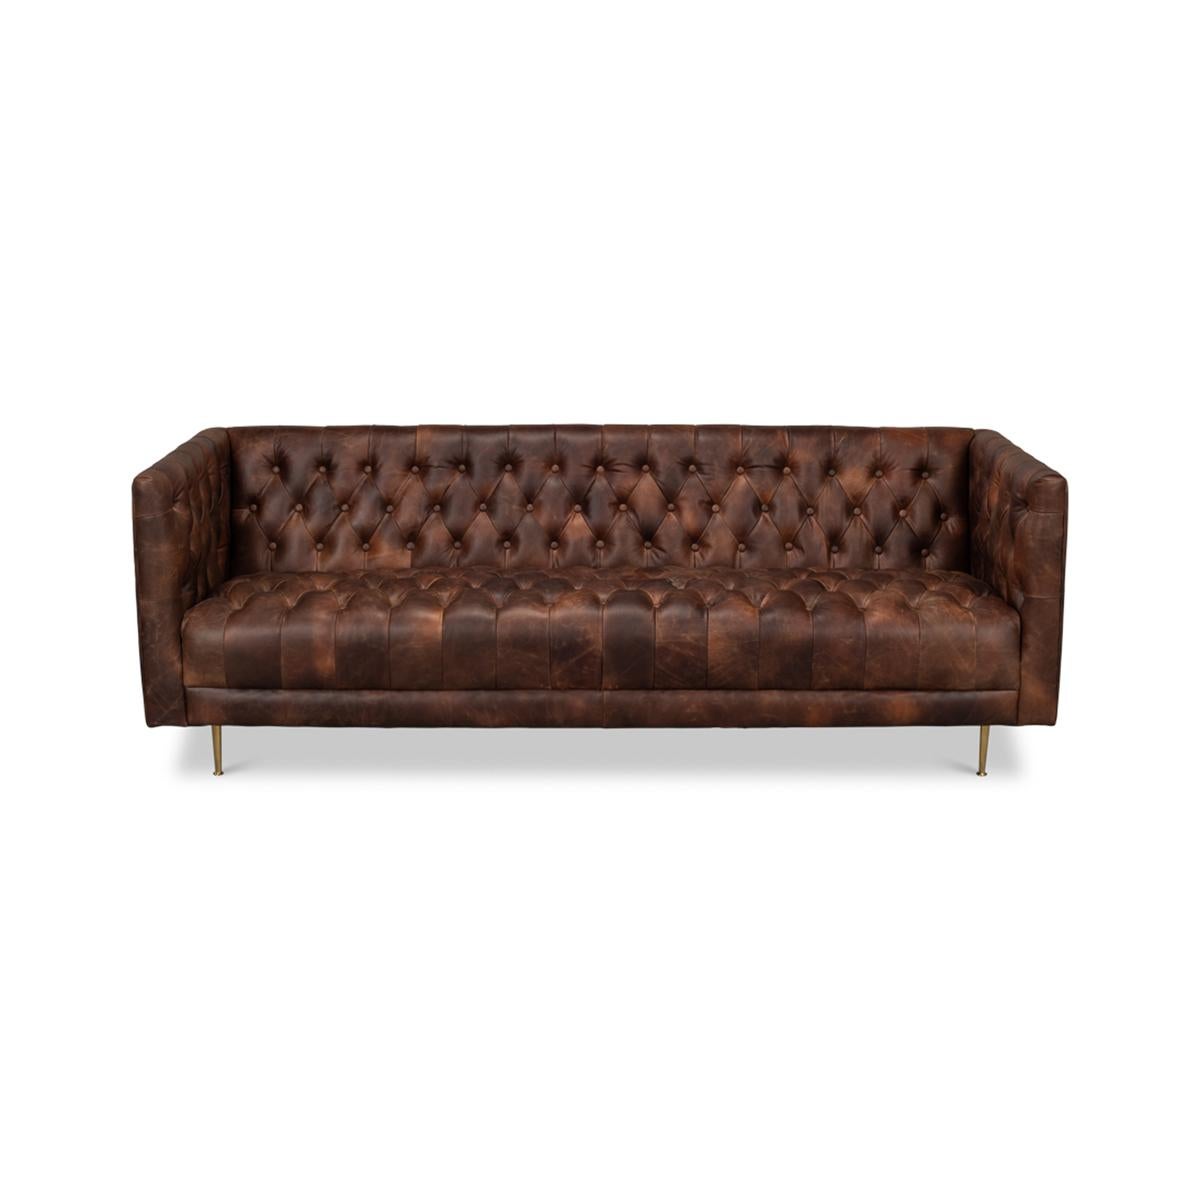 Canapé en cuir touffeté du milieu du siècle, recouvert d'un magnifique cuir de grain supérieur traditionnel marron, monté sur des pieds en métal et mis à l'échelle à la perfection.

Dimensions : 82